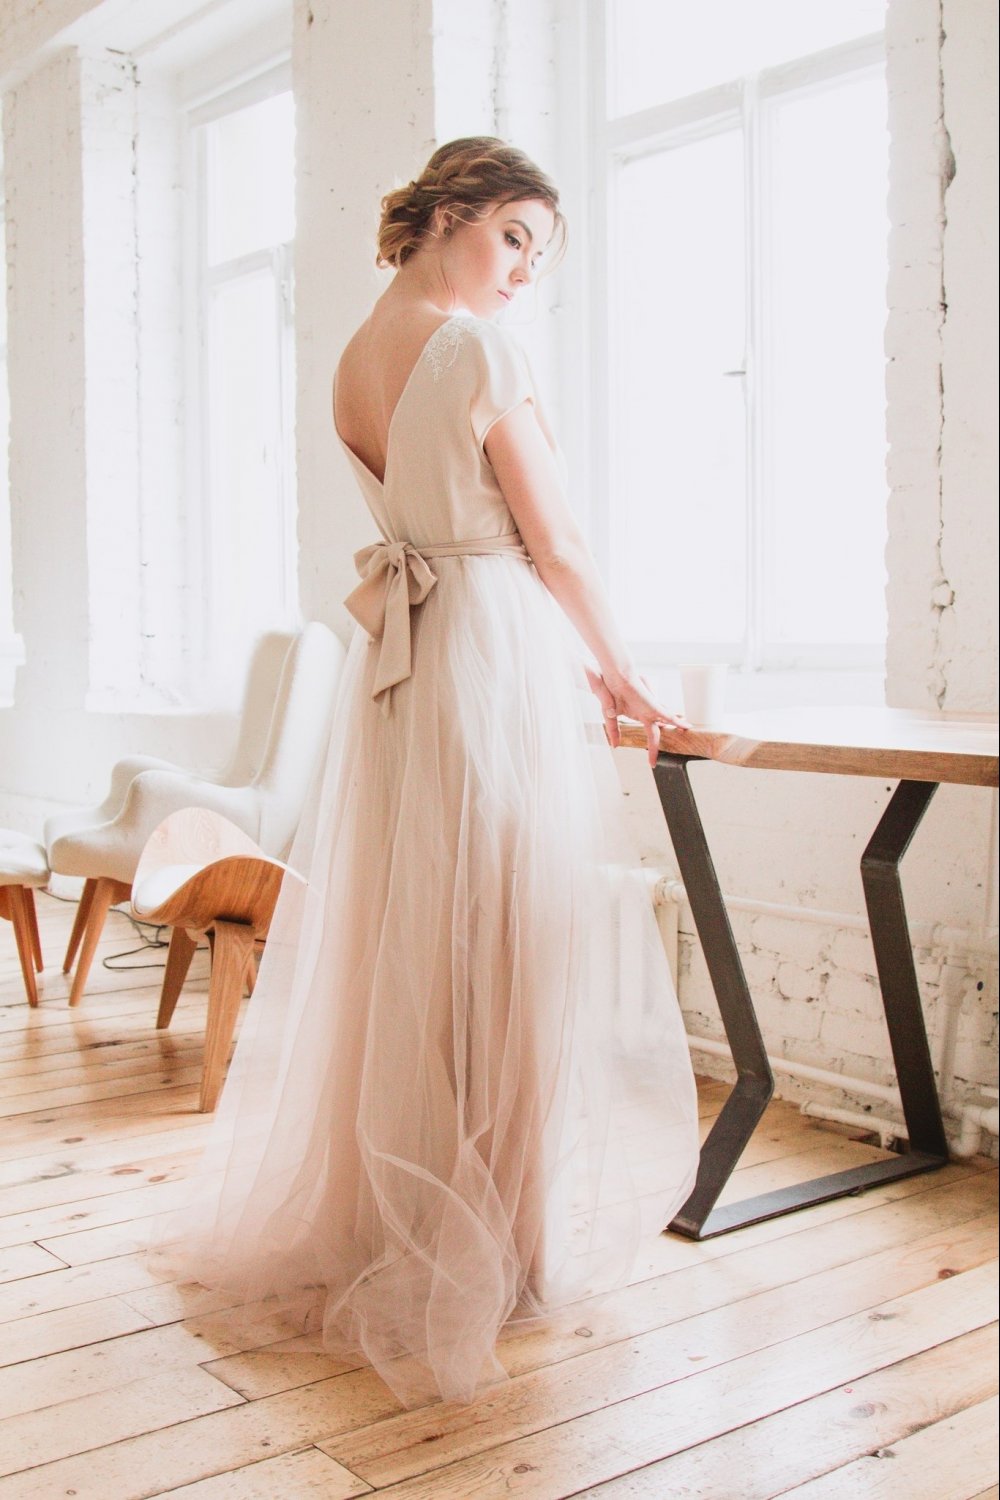 Платье невесты в бежевом цвете с открытой спиной и воздушной юбкой